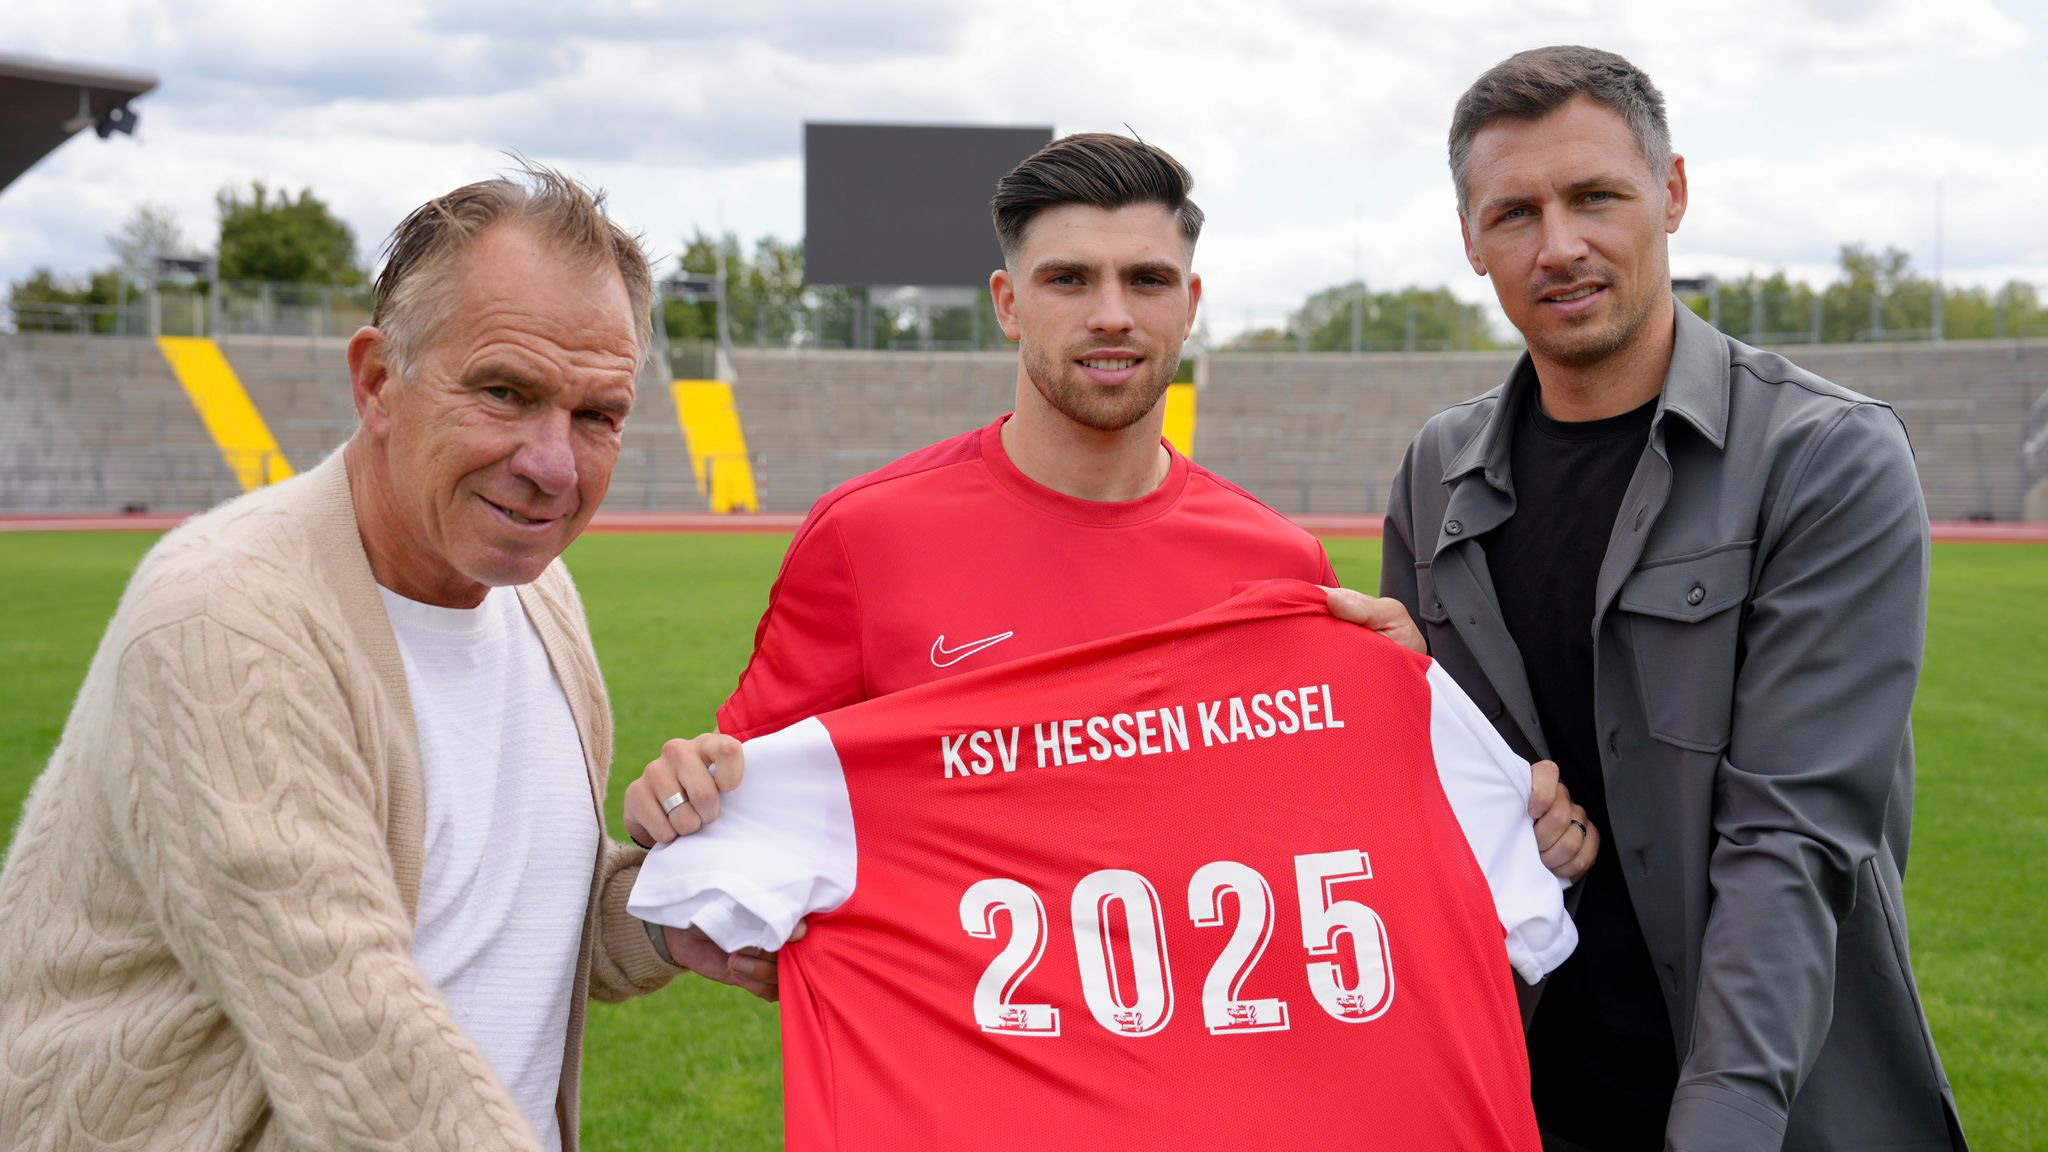 Nikos Zografakis (in der Mitte) spielt künftig beim KSV Hessen Kassel. Im Bild links mit KSV-Vorstand Jens Rose und rechts Geschäftsführer Sören Gonther